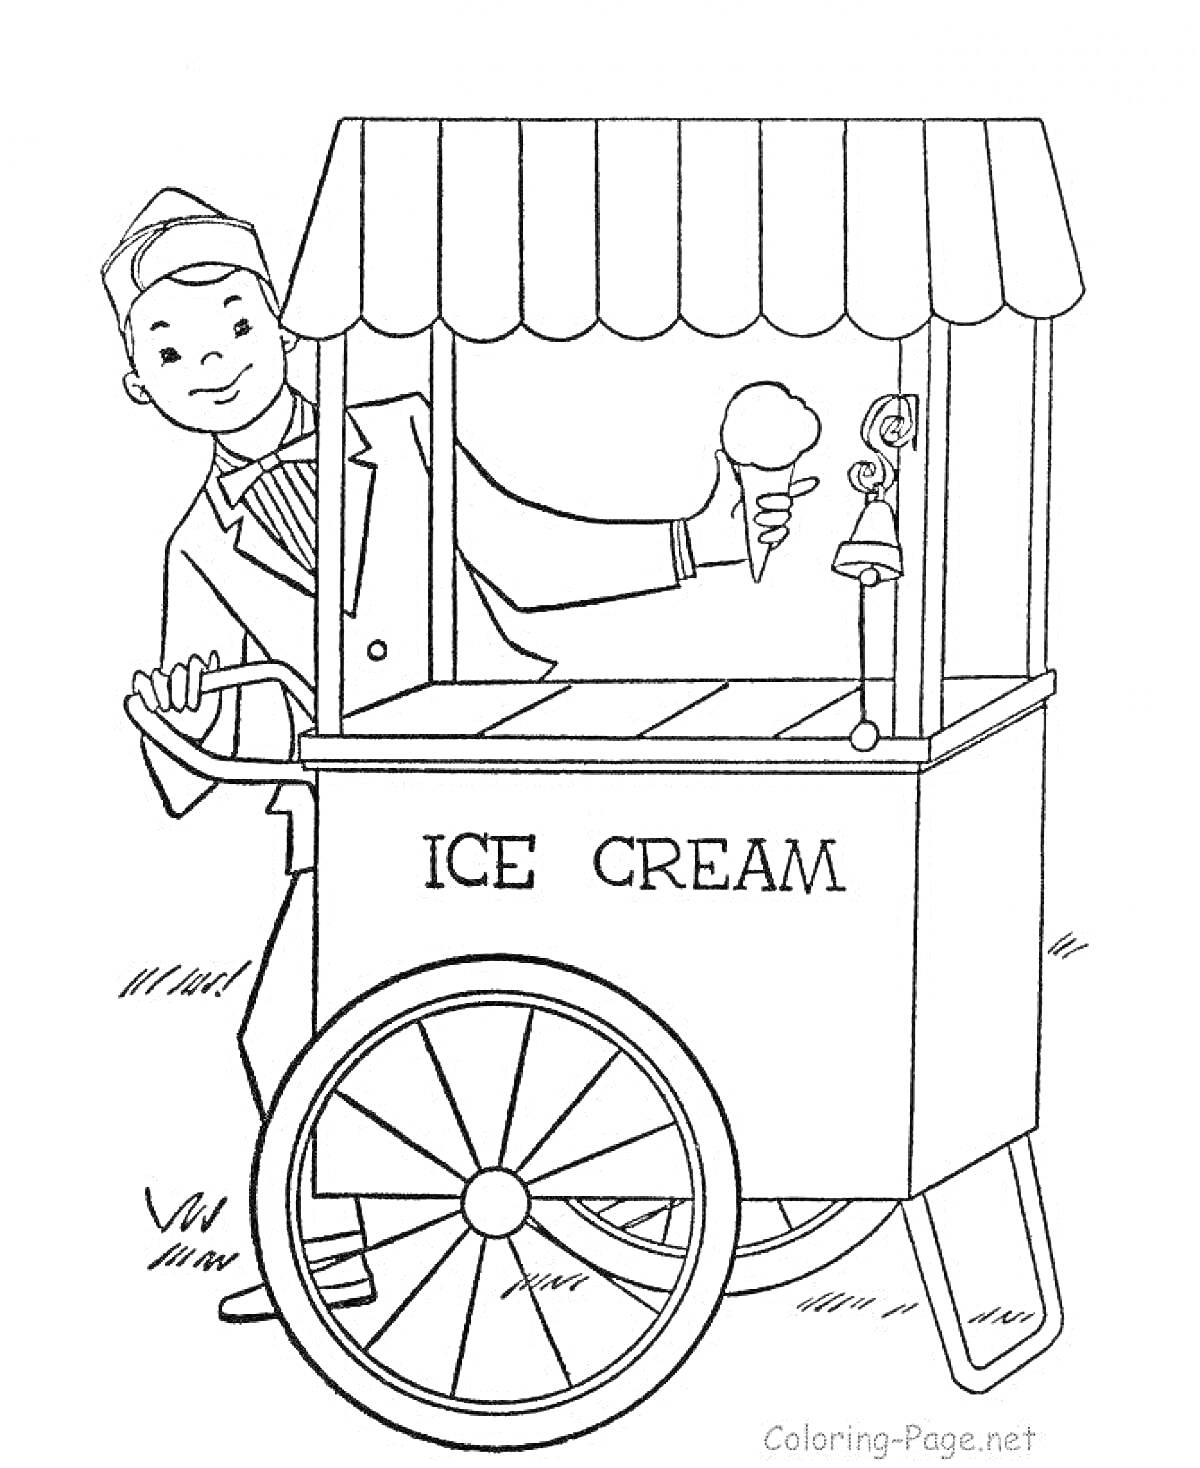 Раскраска Мороженщик у тележки, держащий мороженое, с колоколом для привлечения клиентов